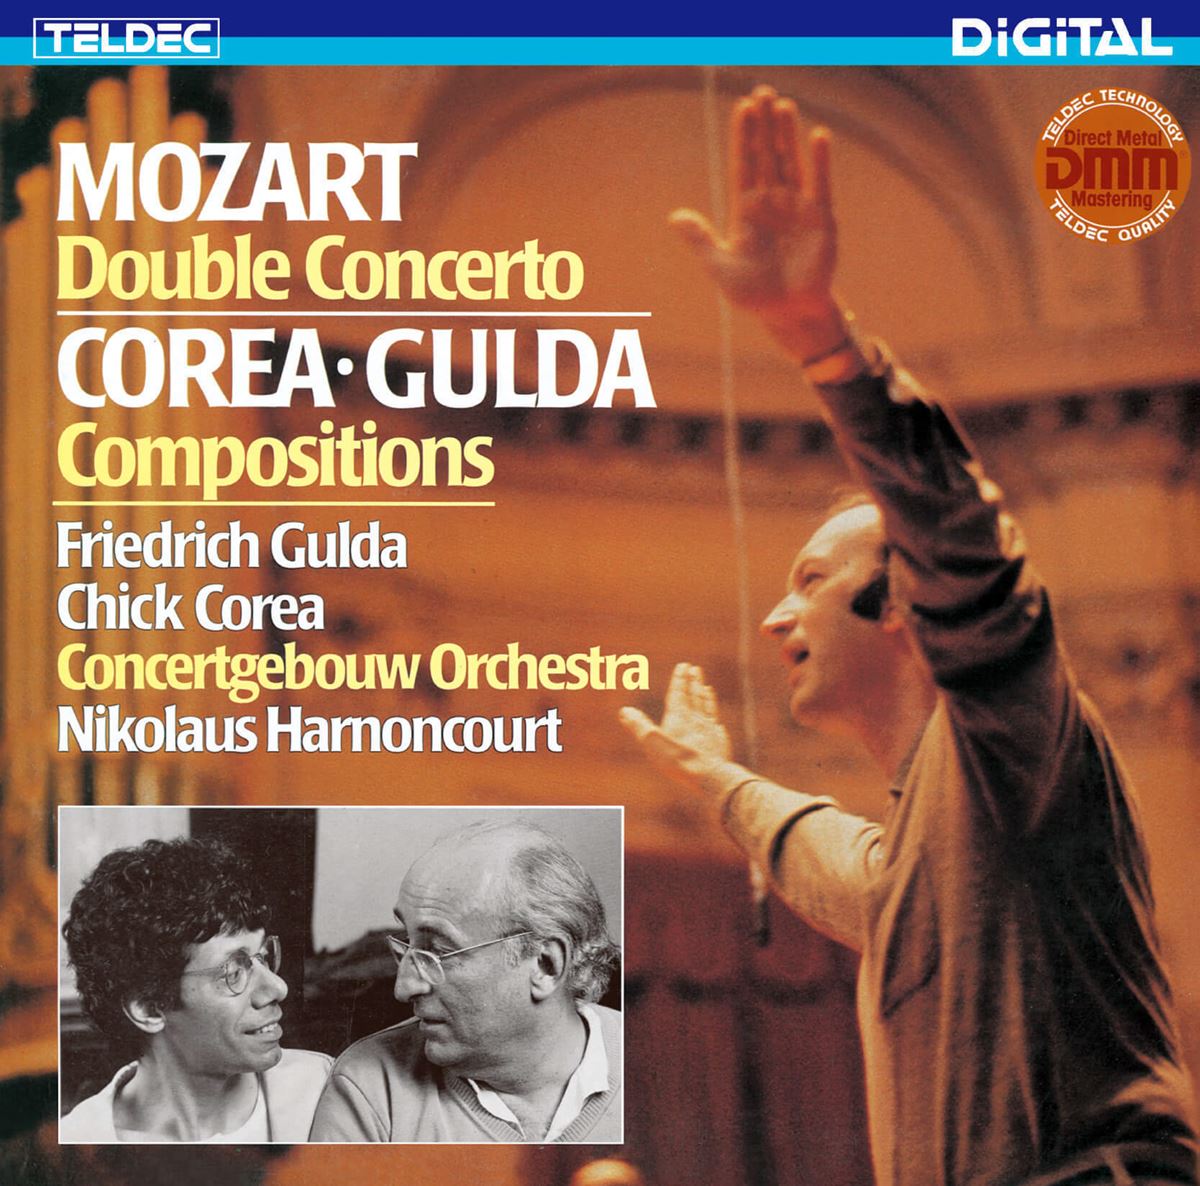 『モーツァルト:2台のピアノのための協奏曲』 ニコラウス・アーノンクール、フリードリヒ・グルダ、チック・コリア